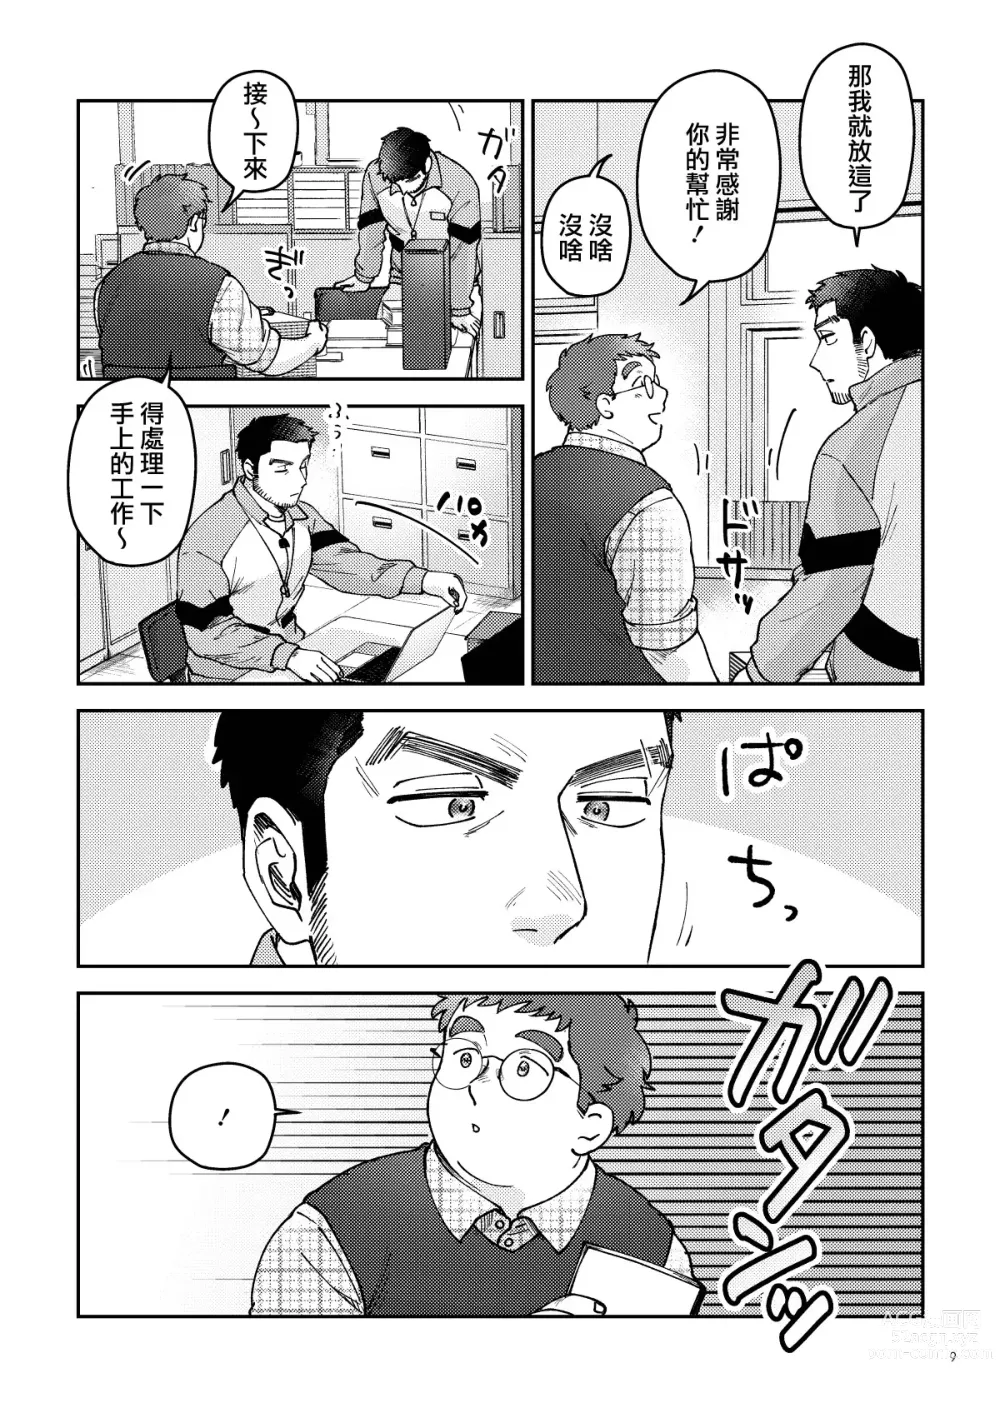 Page 9 of manga はいよろこんでのれイメージギャップハートビート